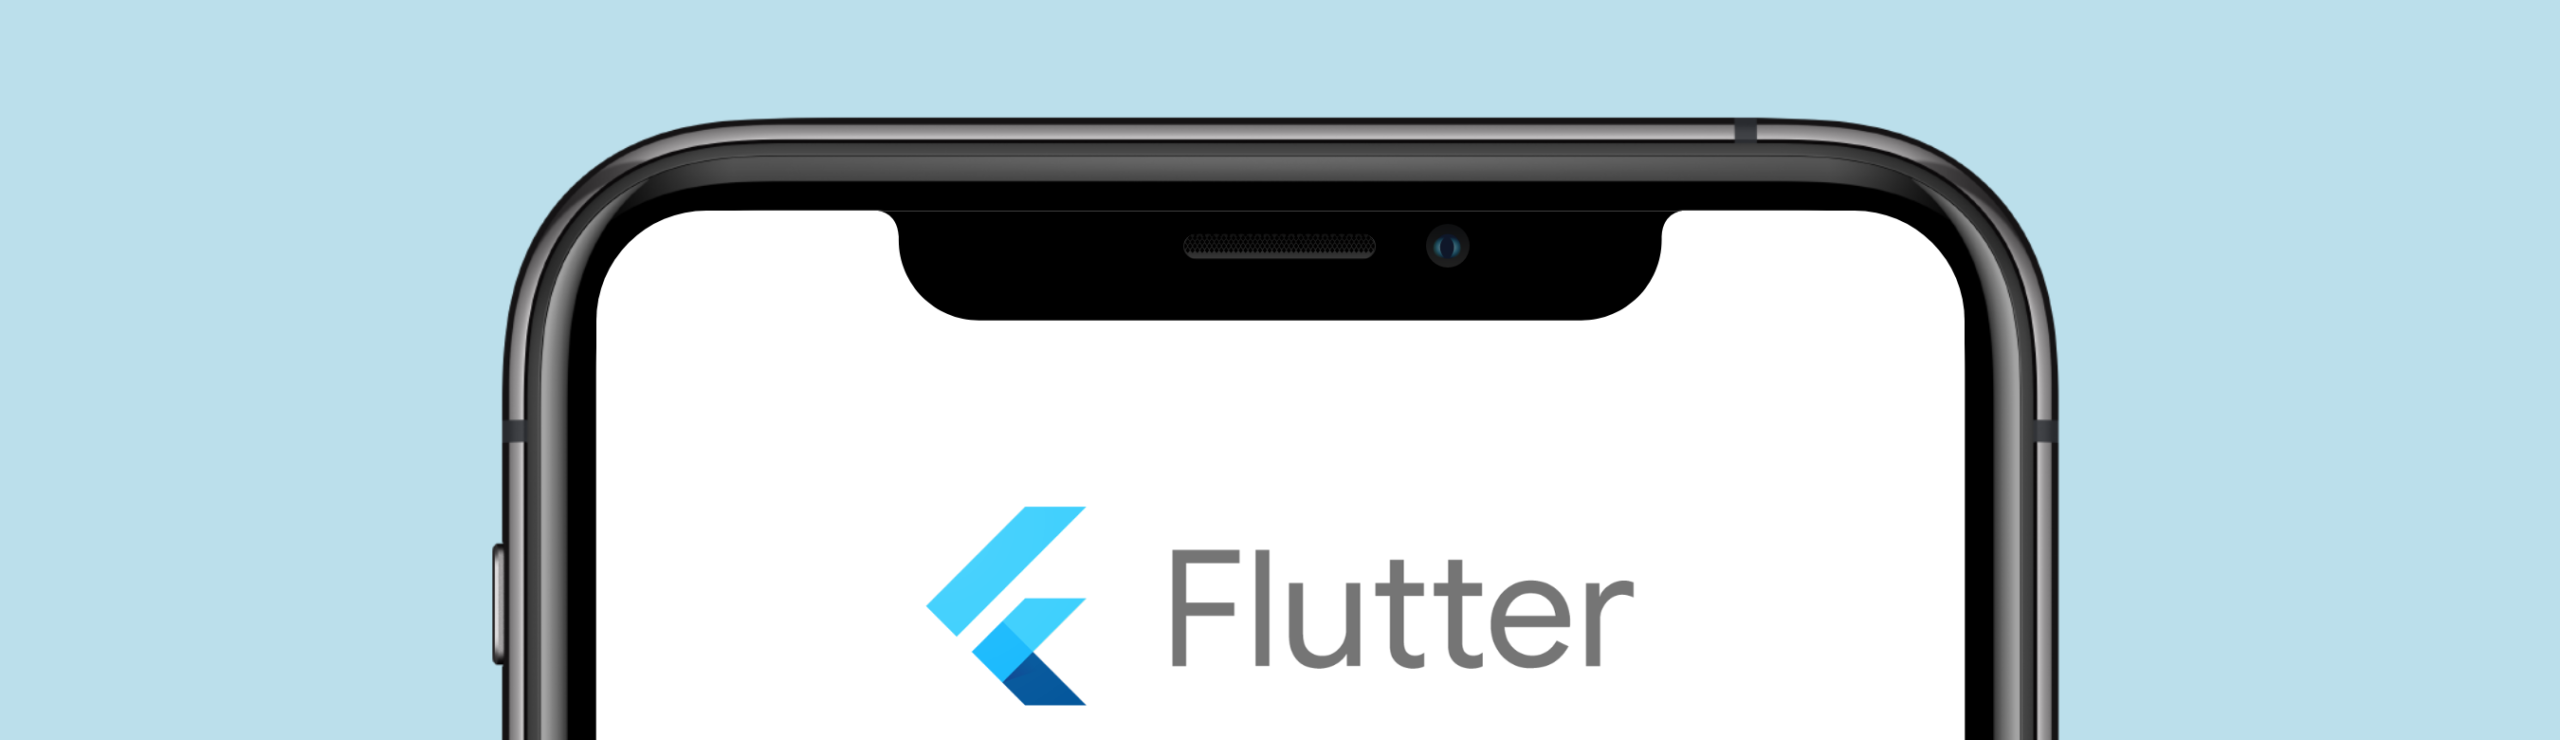 App-Entwicklung mit Google Flutter: Cross-Platform-Strategie in einem Großprojekt